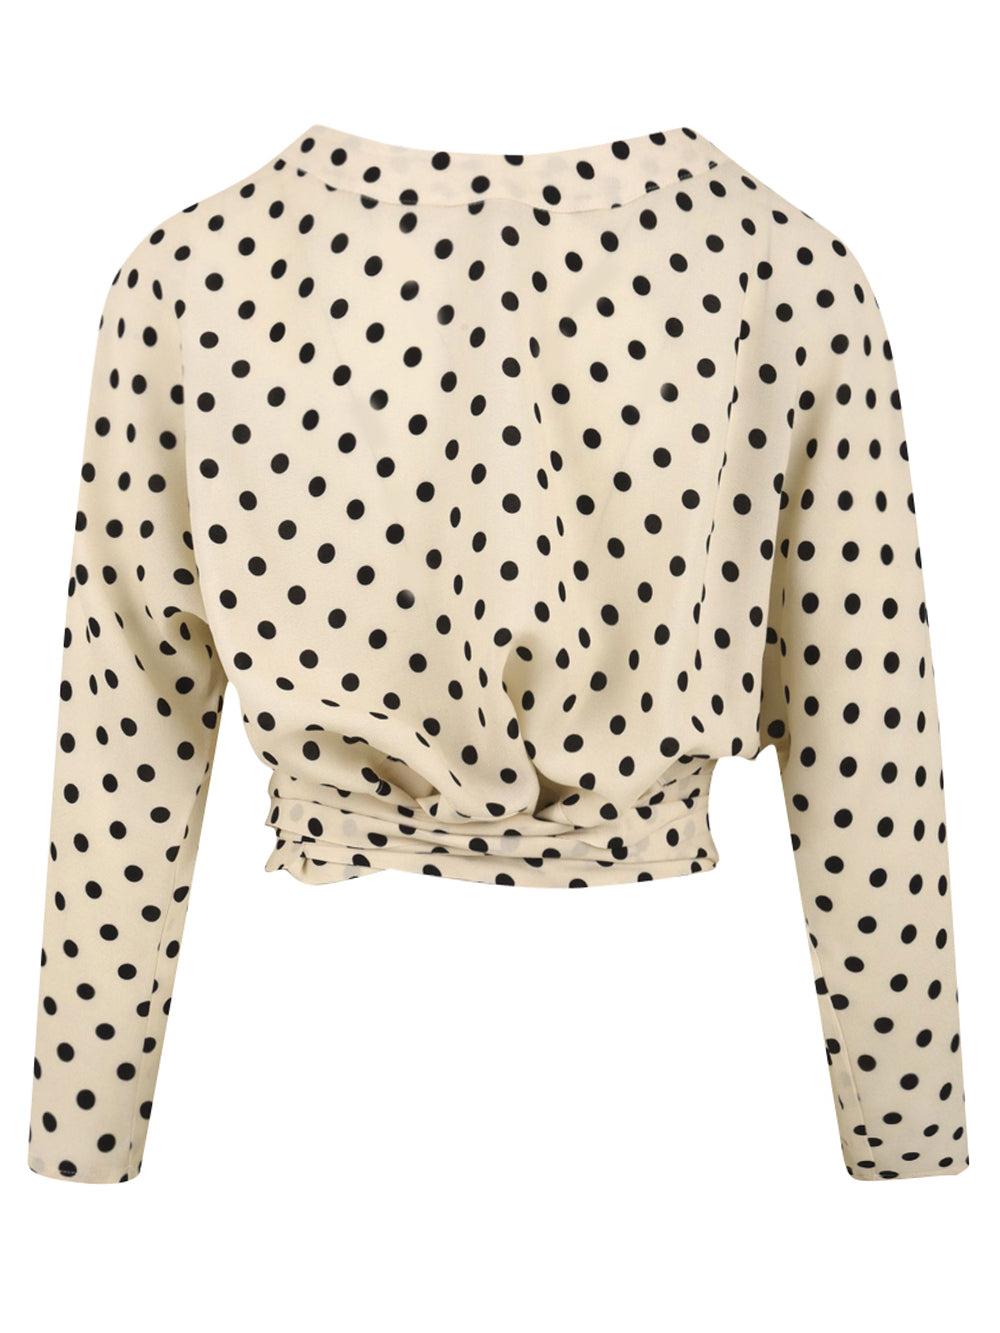 Women's Carla cropped polka dot shirt